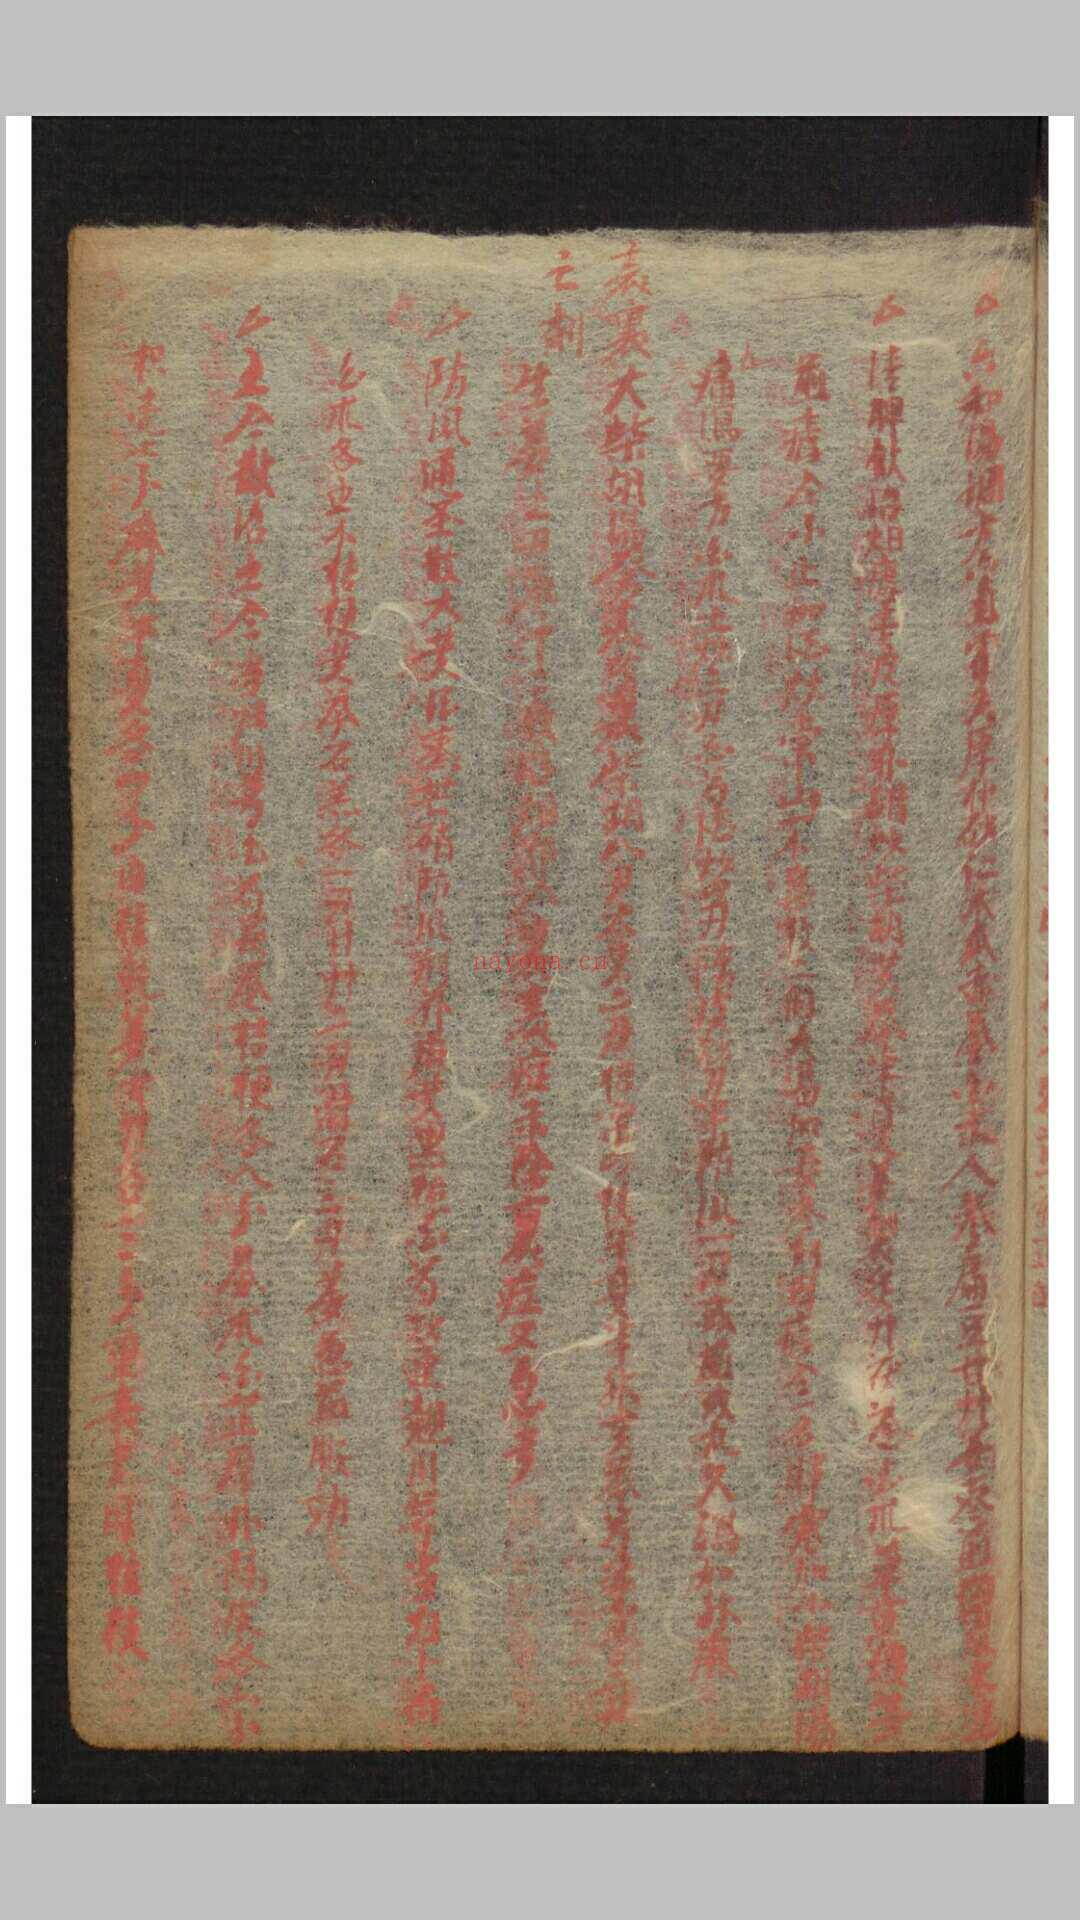 家藏医药抄本, 1882